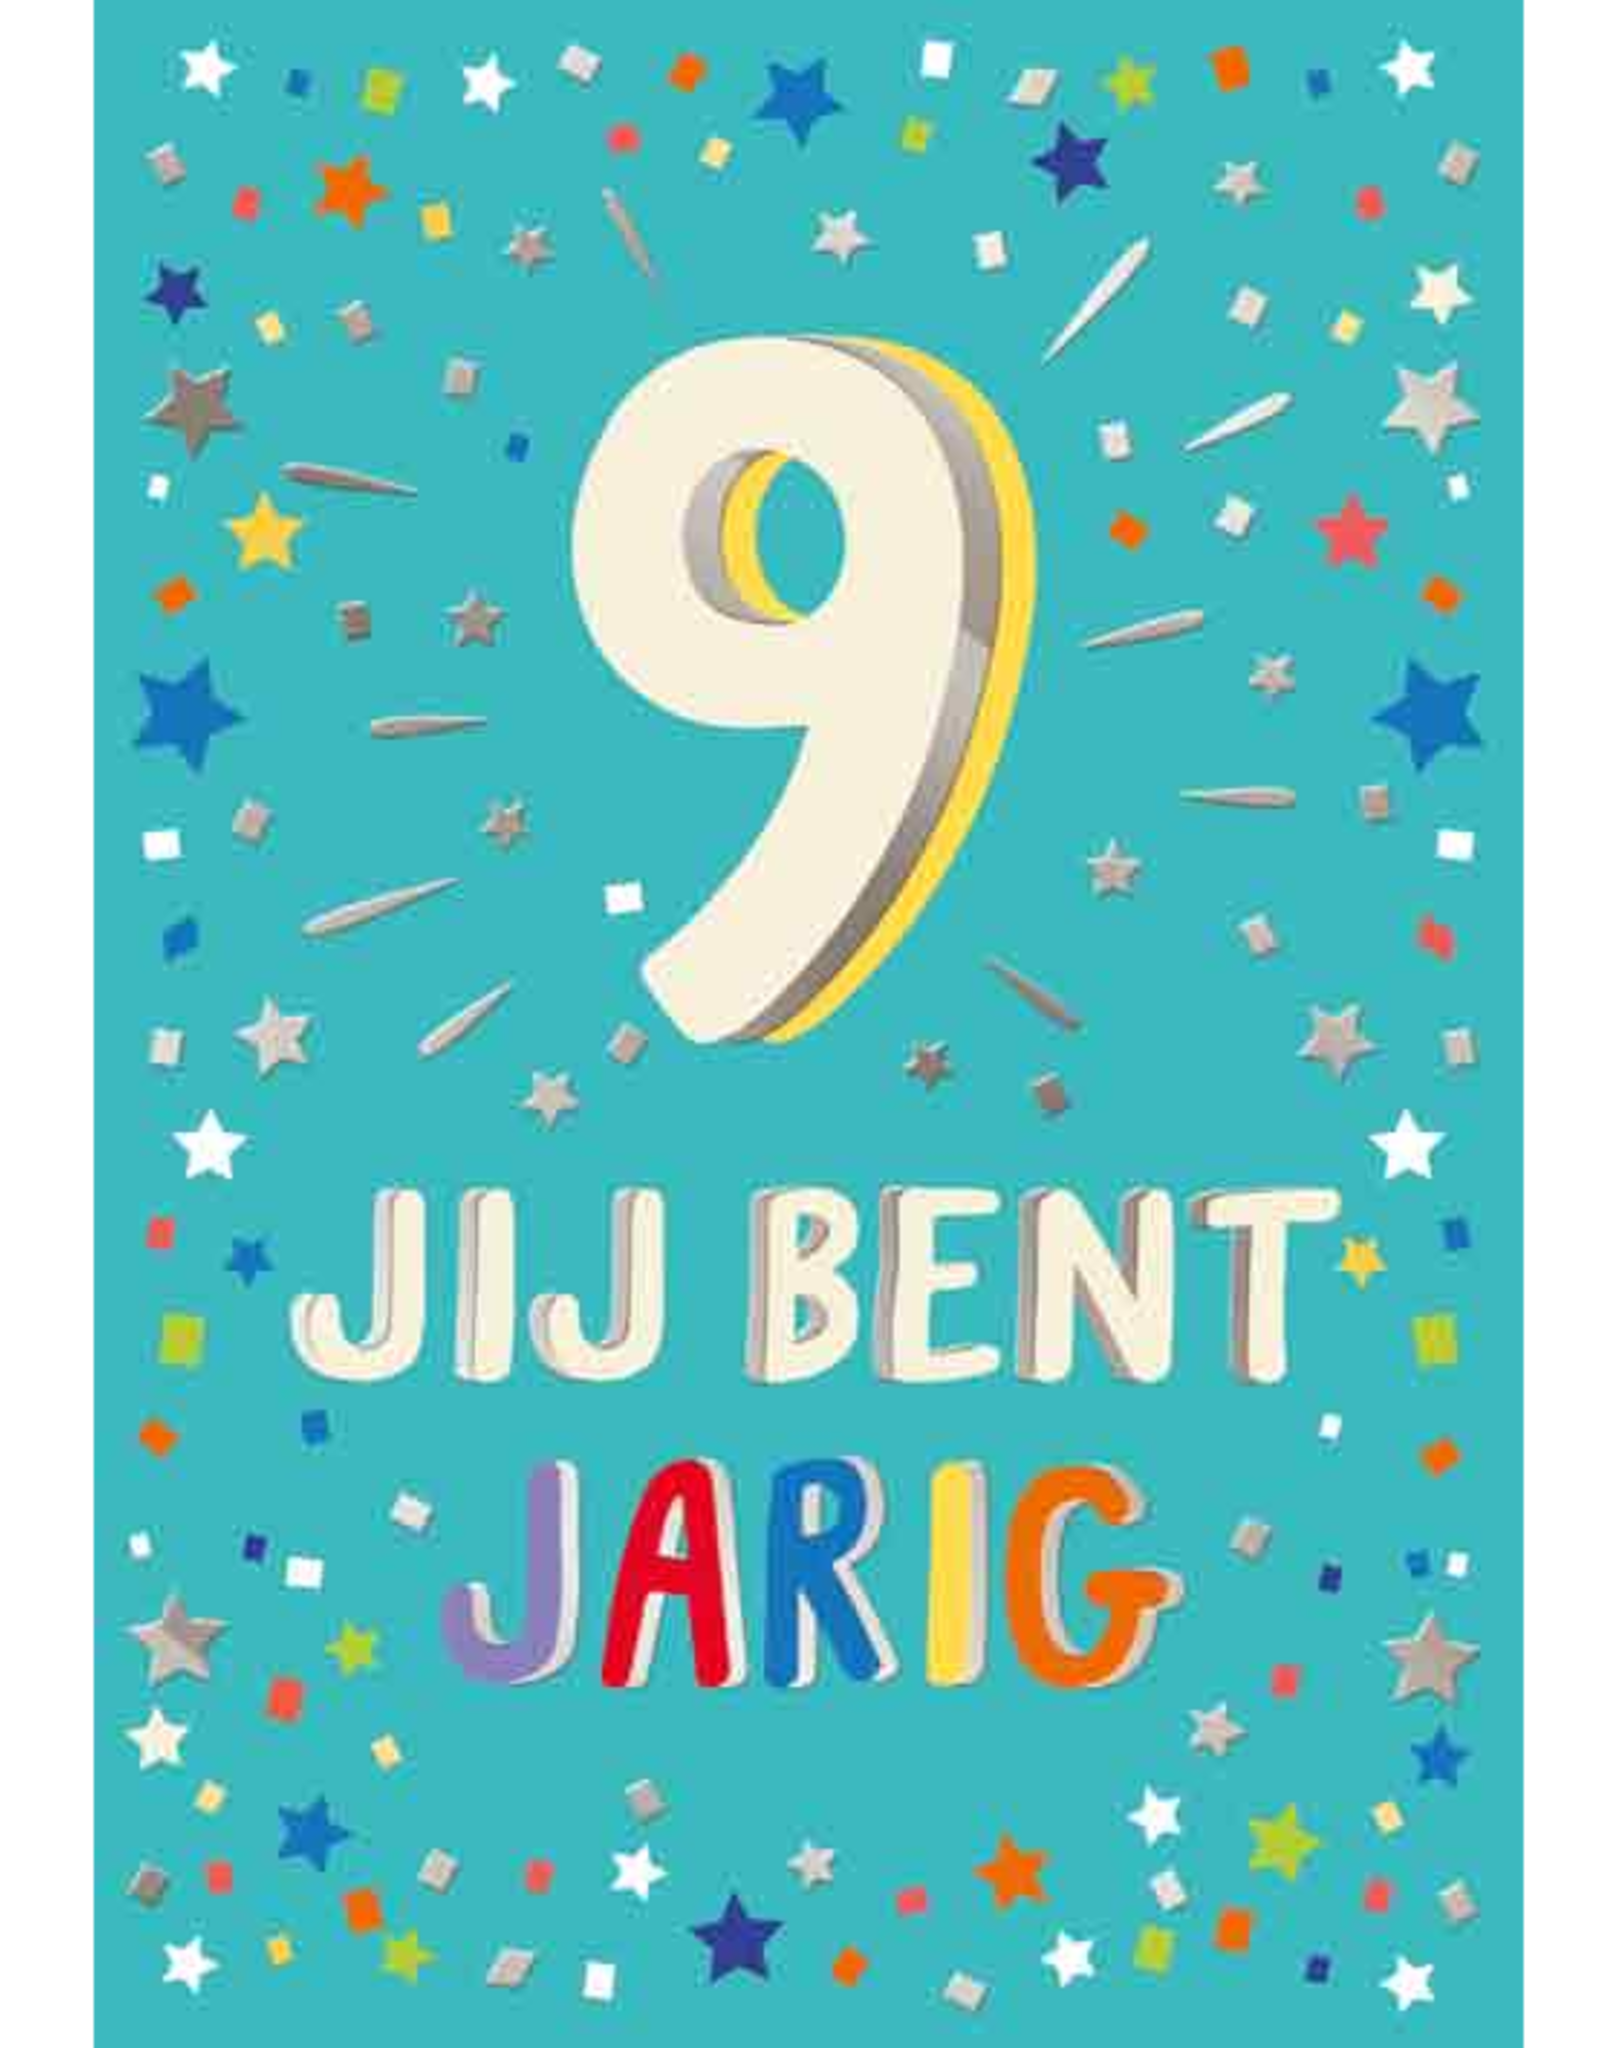 9 Jij bent Jarig - Wenskaart Celebrate